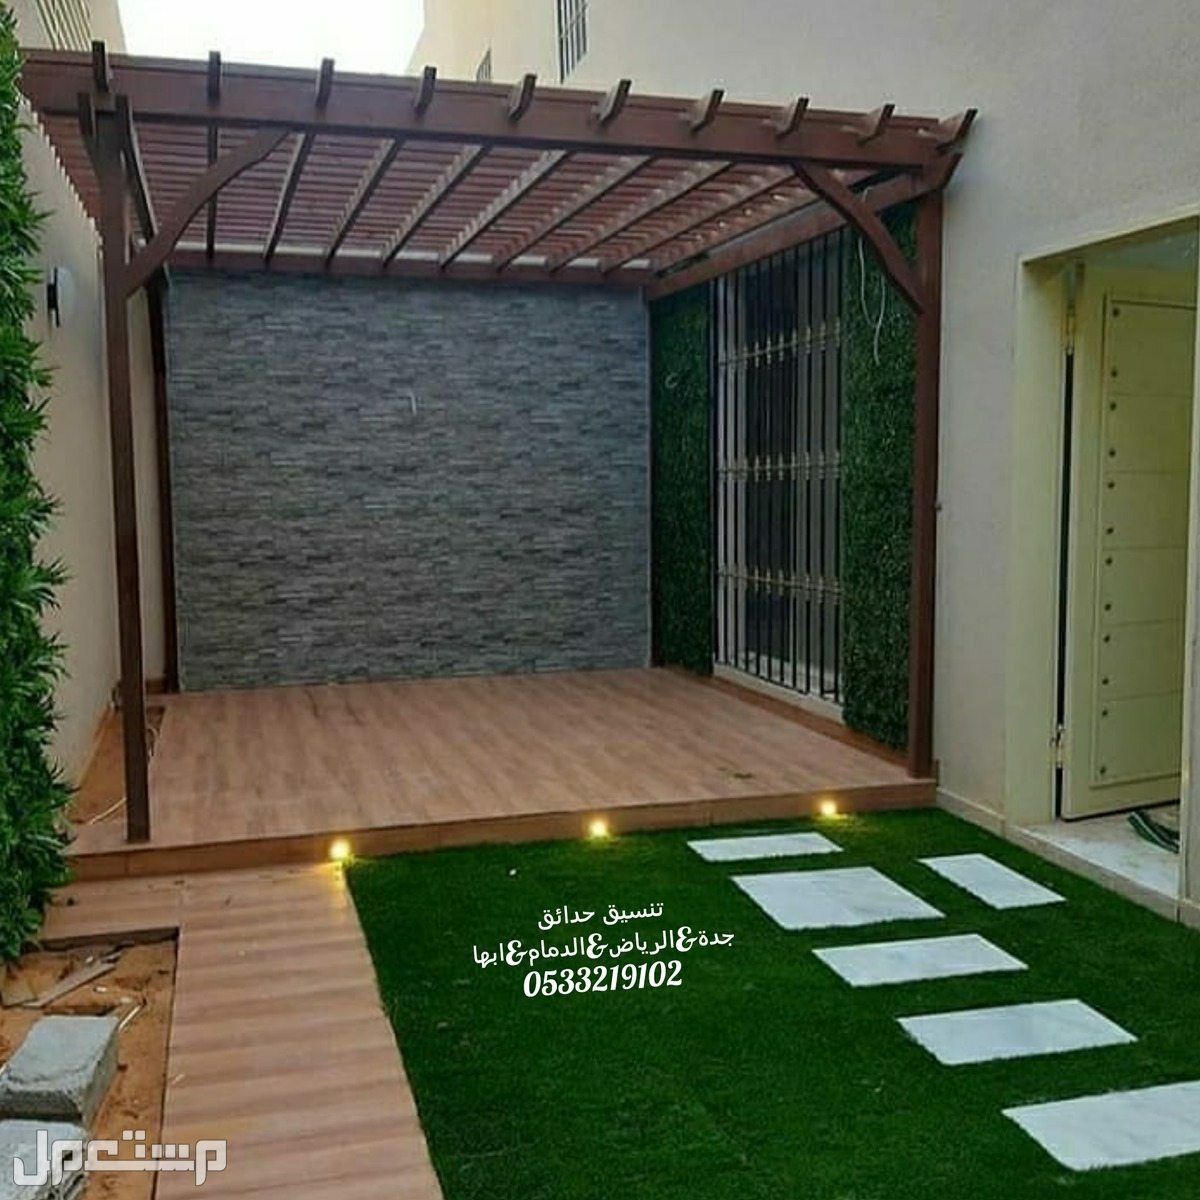 تركيب عشب صناعى حدائق السعودية مظلات حديقة الرياض حدائق العشب الصناعي 0533219102